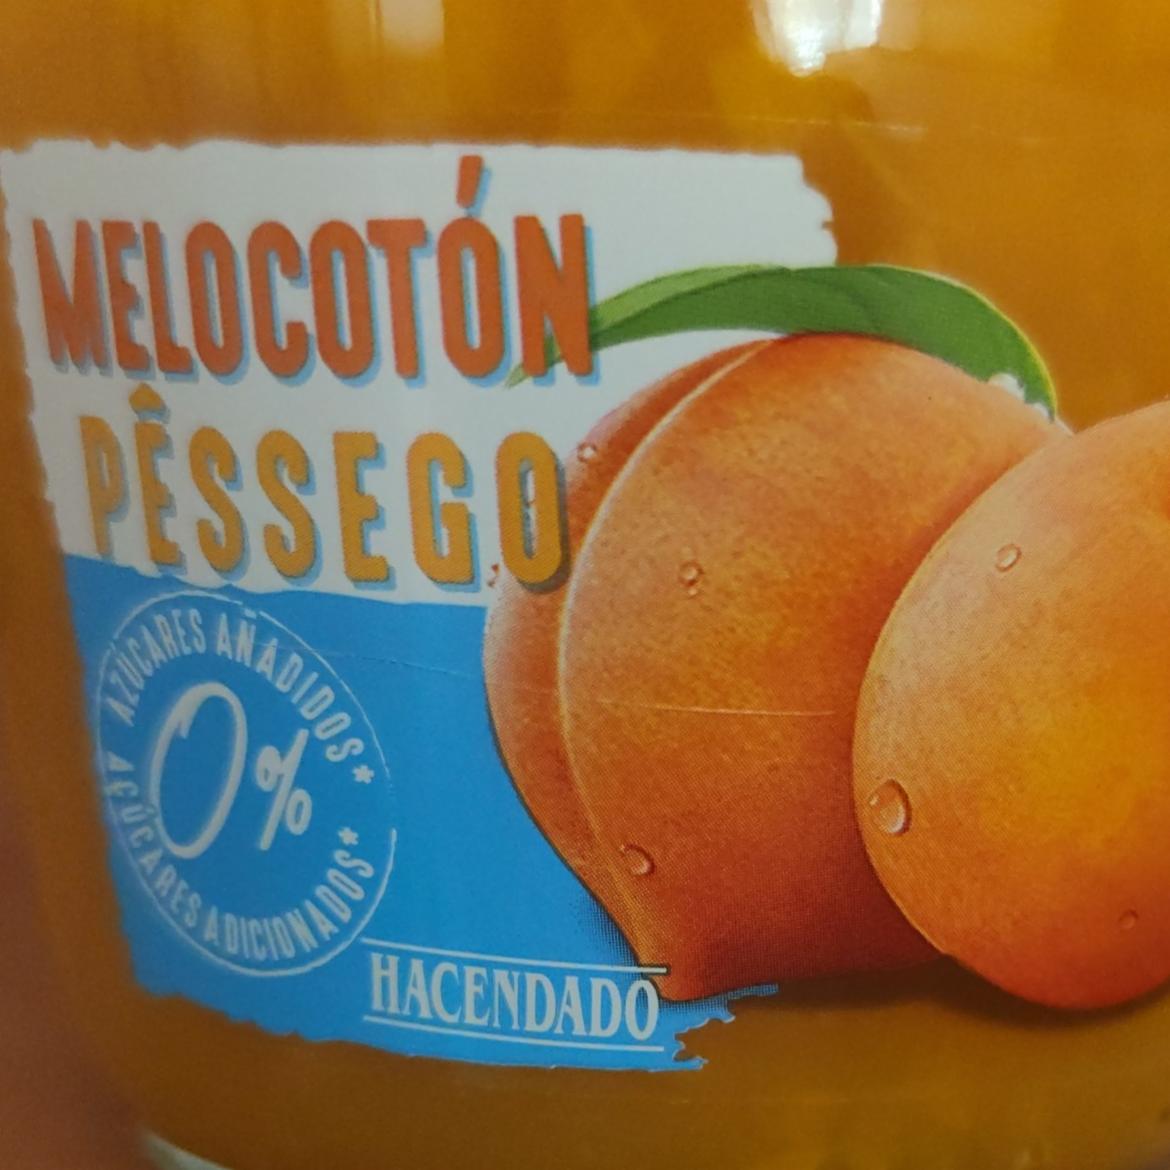 Fotografie - Melocotón Pêssego 0% Azúcares Añadidos Hacendado